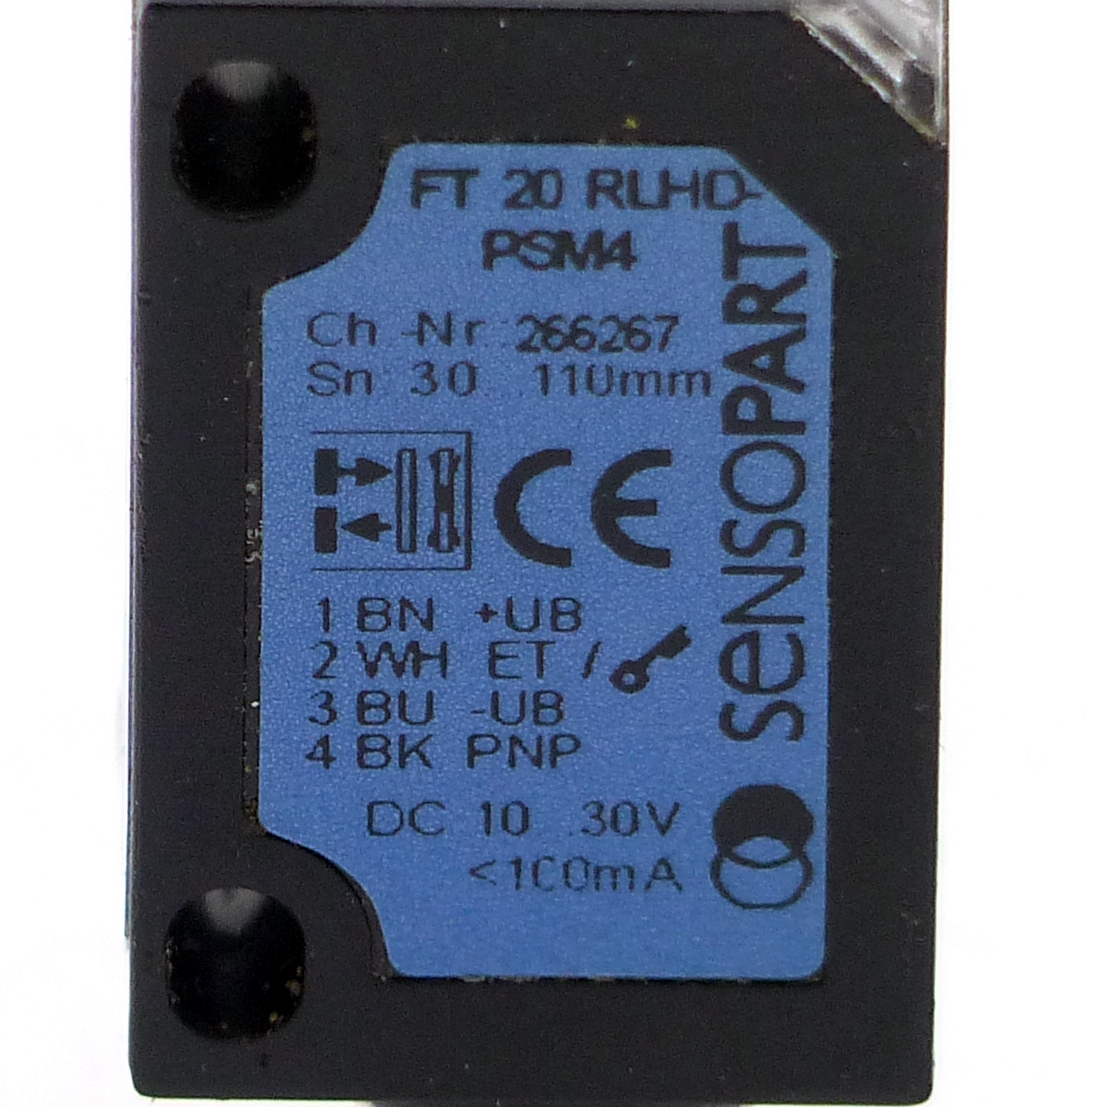 Lichtschranke FT 20 RLHD-PSM4 